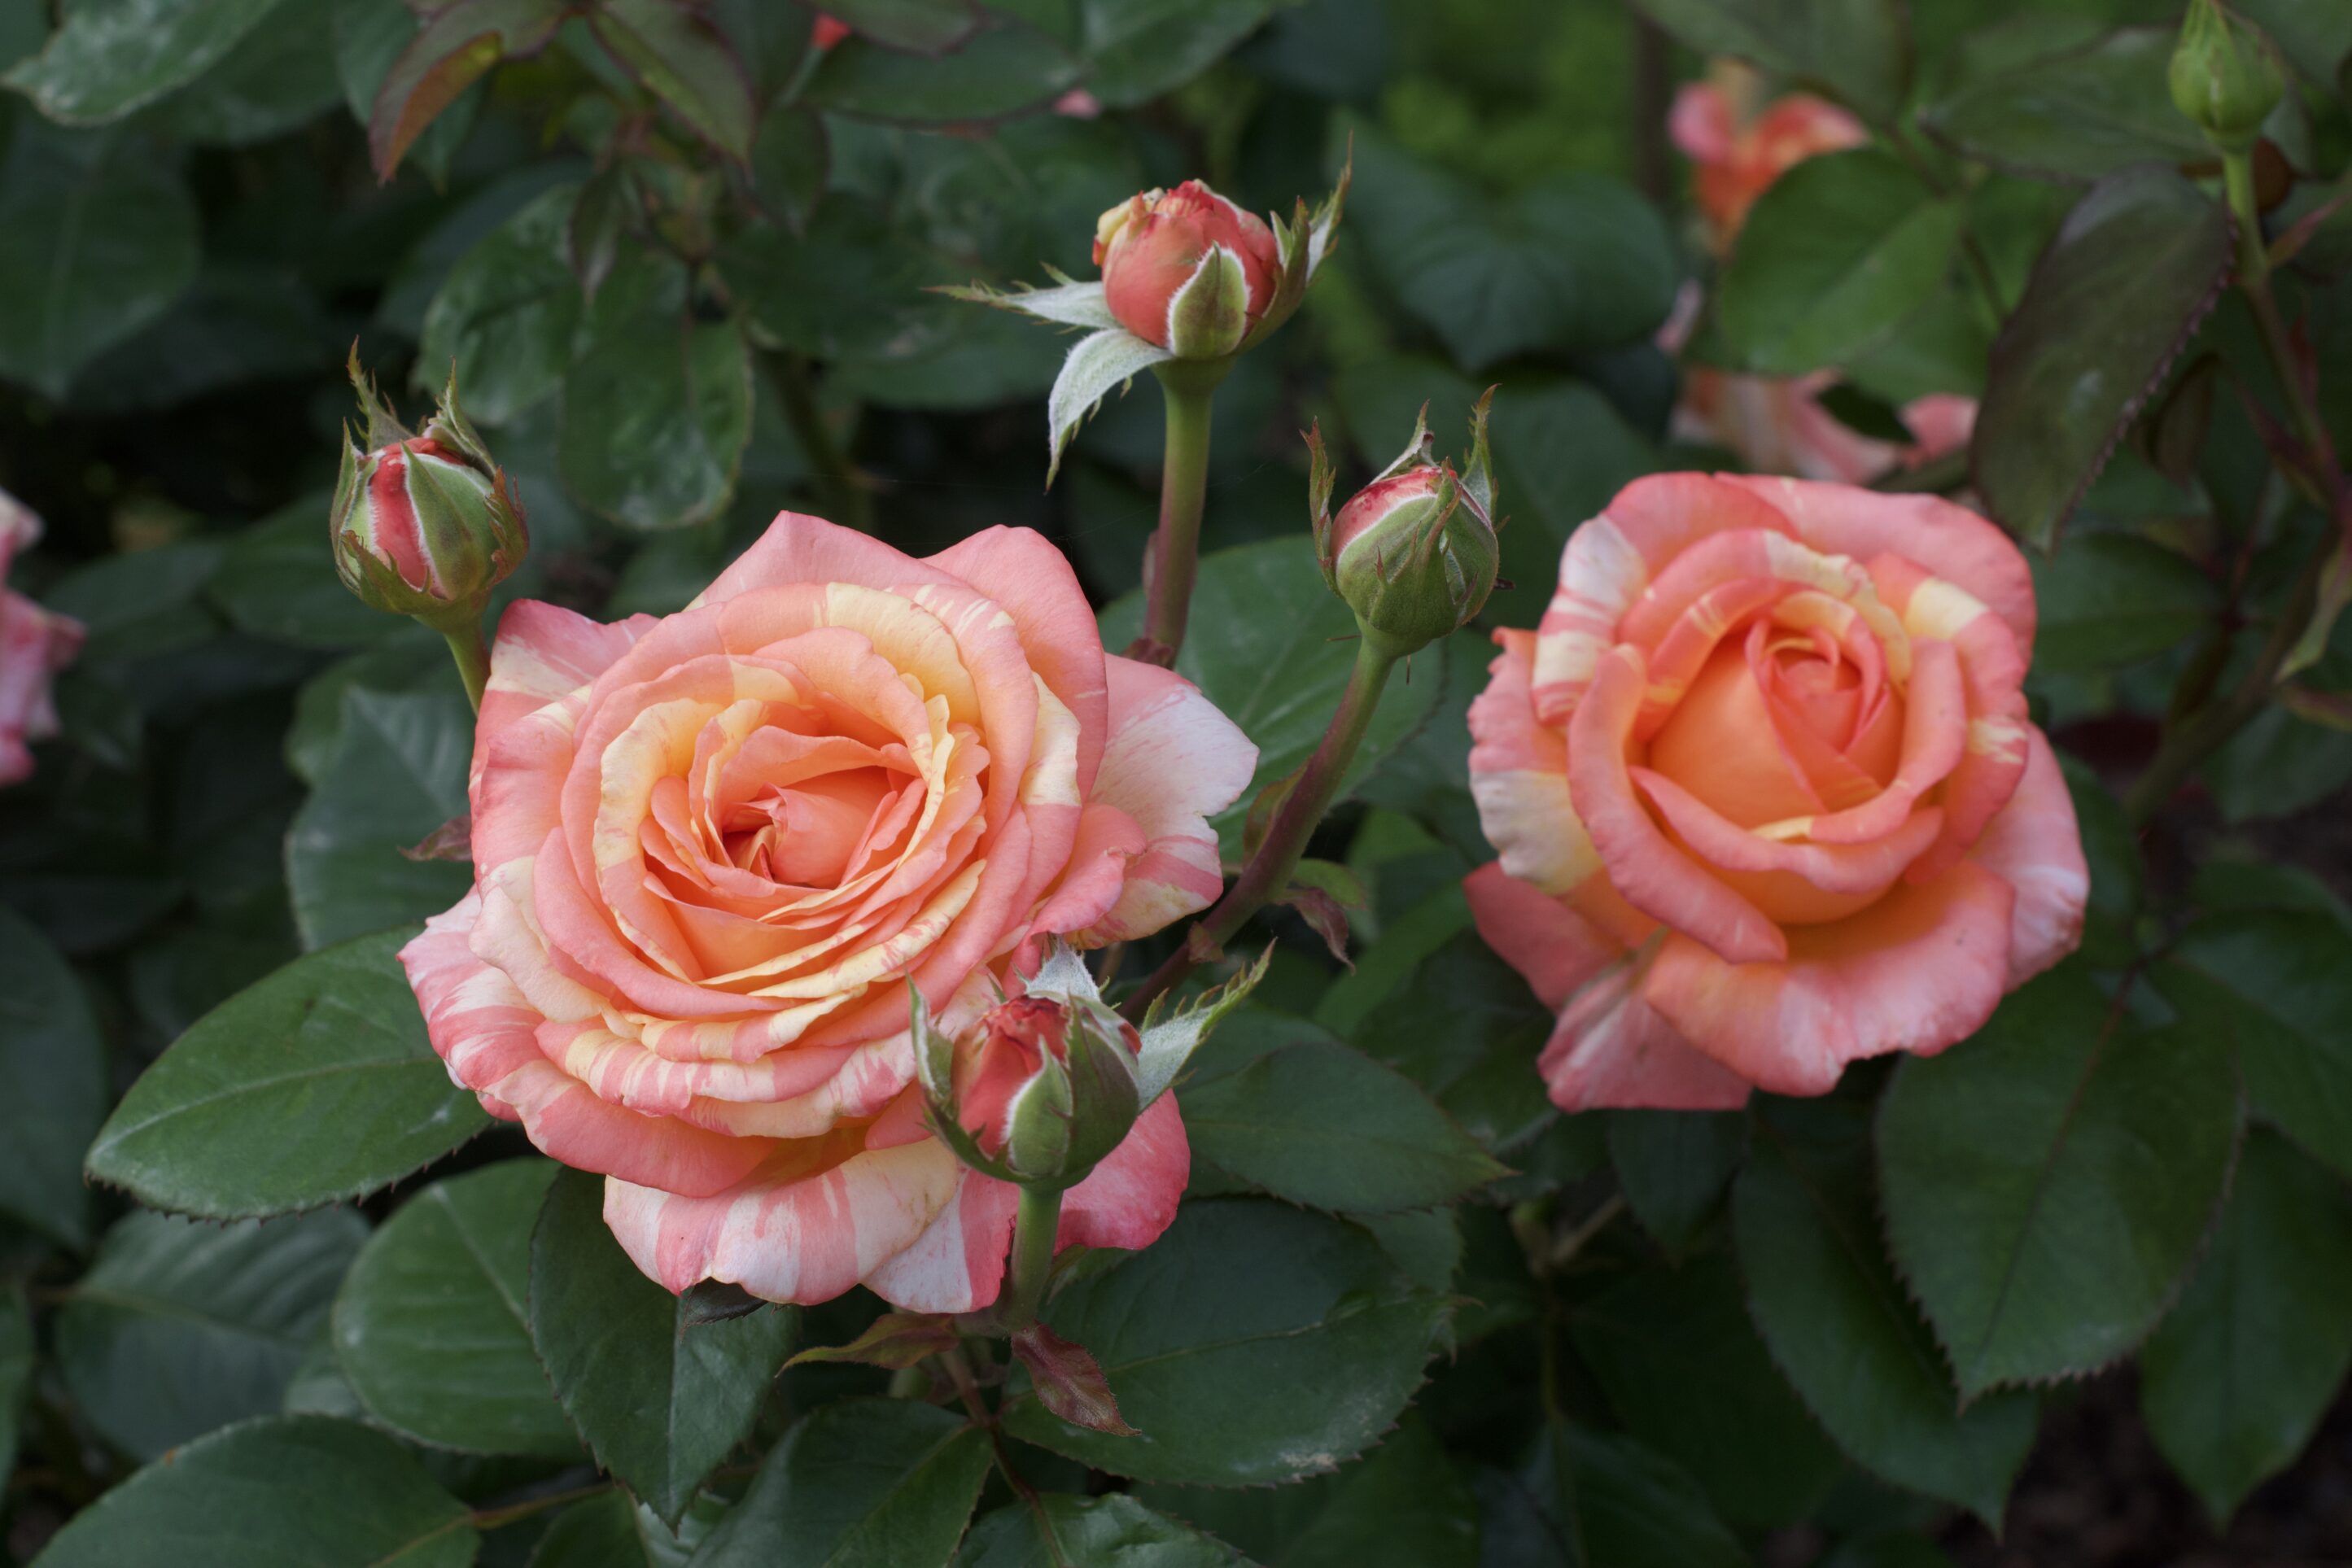 Peach Swirl rose